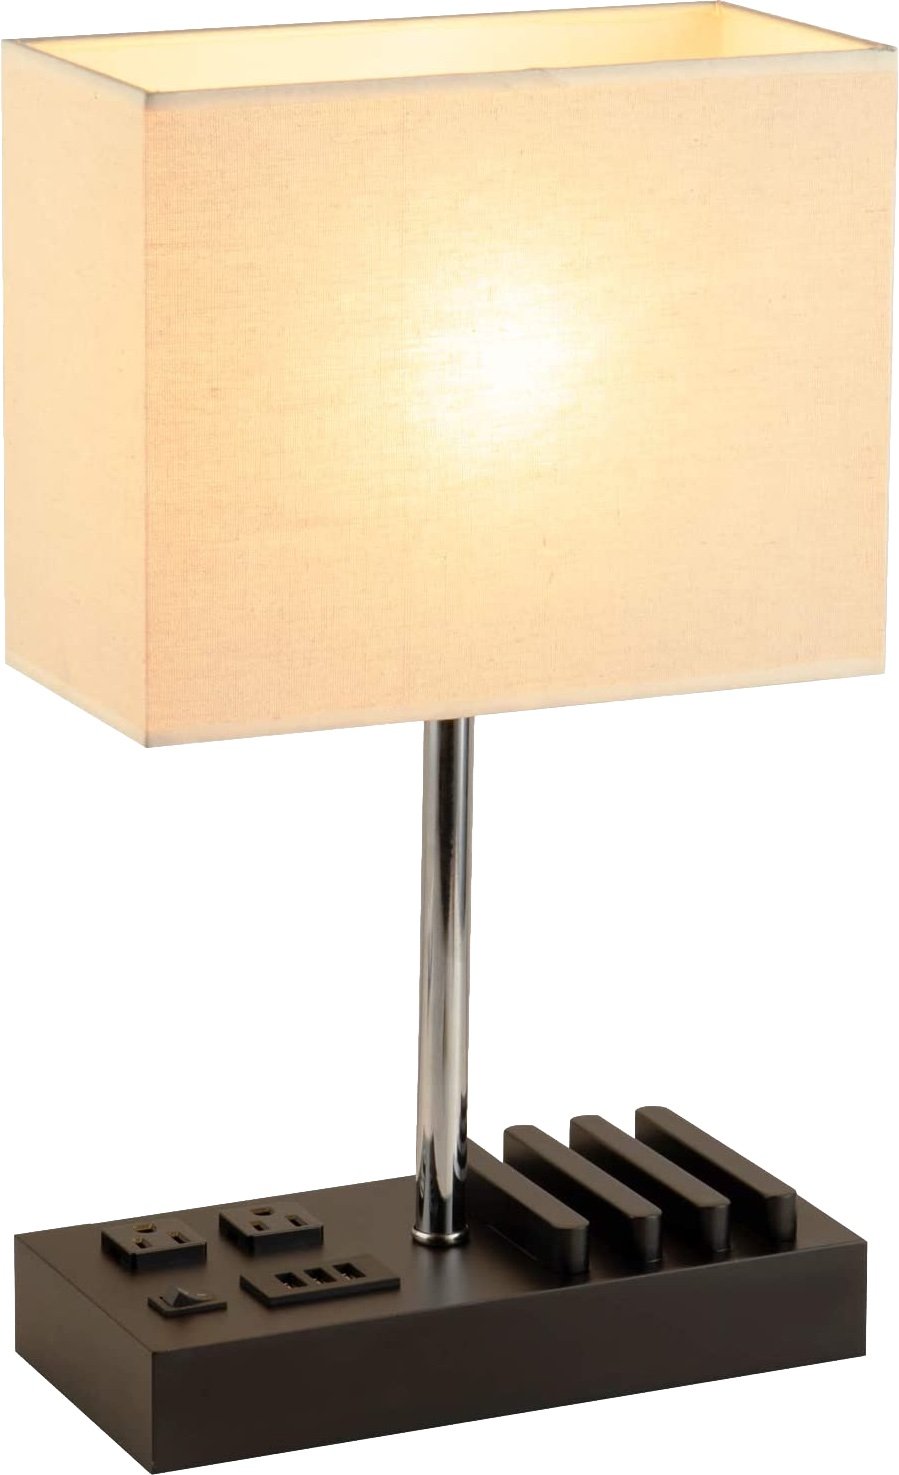 Dreamholder Desk Lamp Render